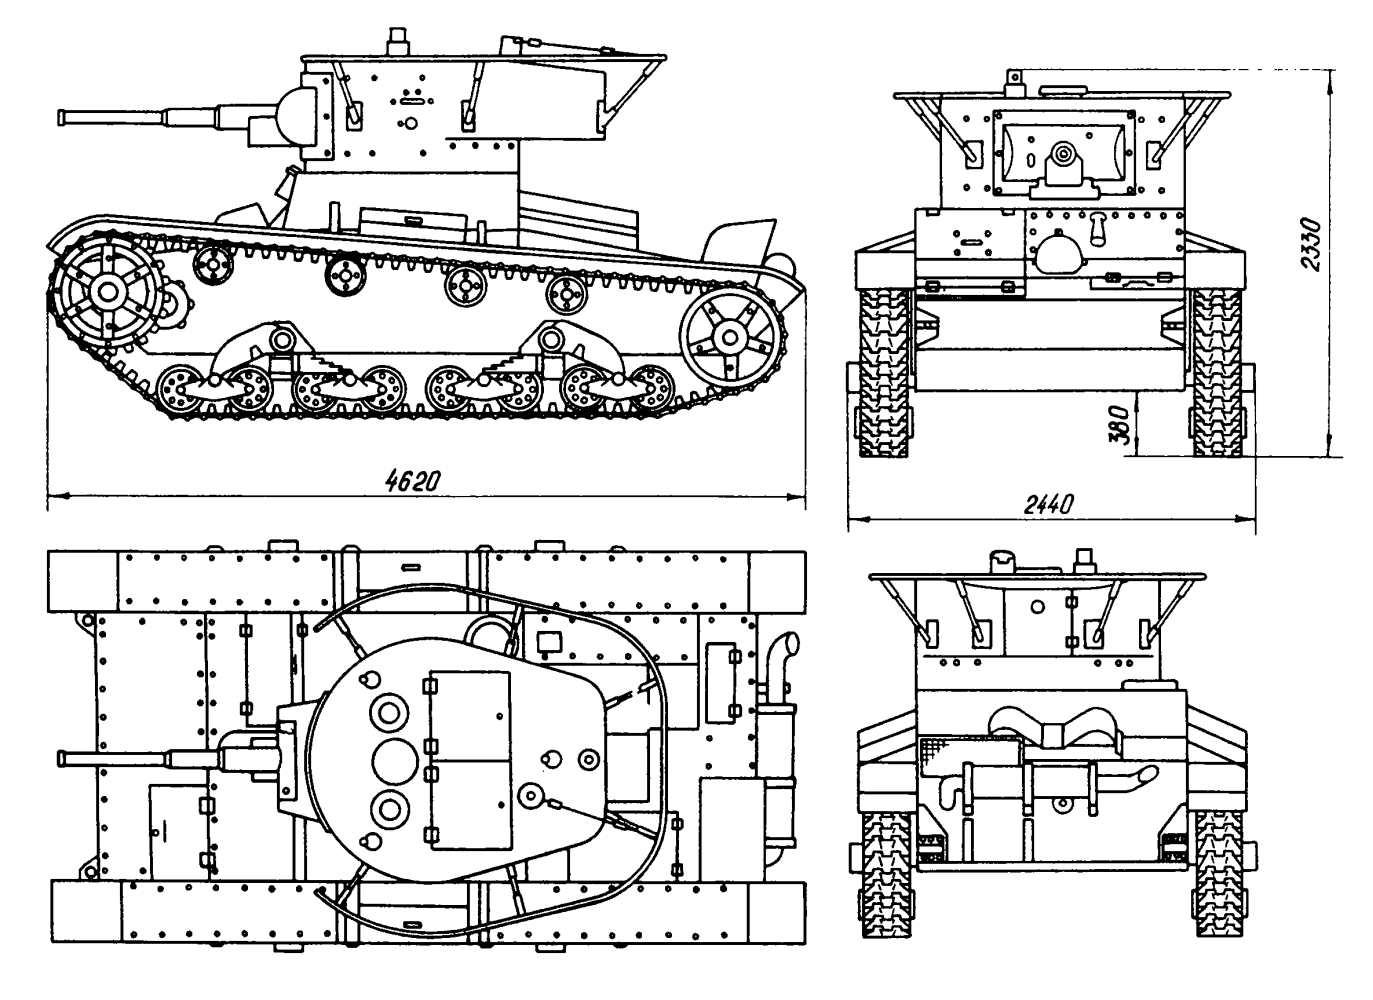         Серийное производство этой однобашенной машины было организовано в Ленинграде в 1933 г. От своего предшественника (двухбашенного) она отличалась усиленным пушечным вооружением, высотой, массой. Предназначалась для непосредственной поддержки пехоты. Т-26 сохранил компоновочную схему корпуса прототипа - английского 6-тонного танка 